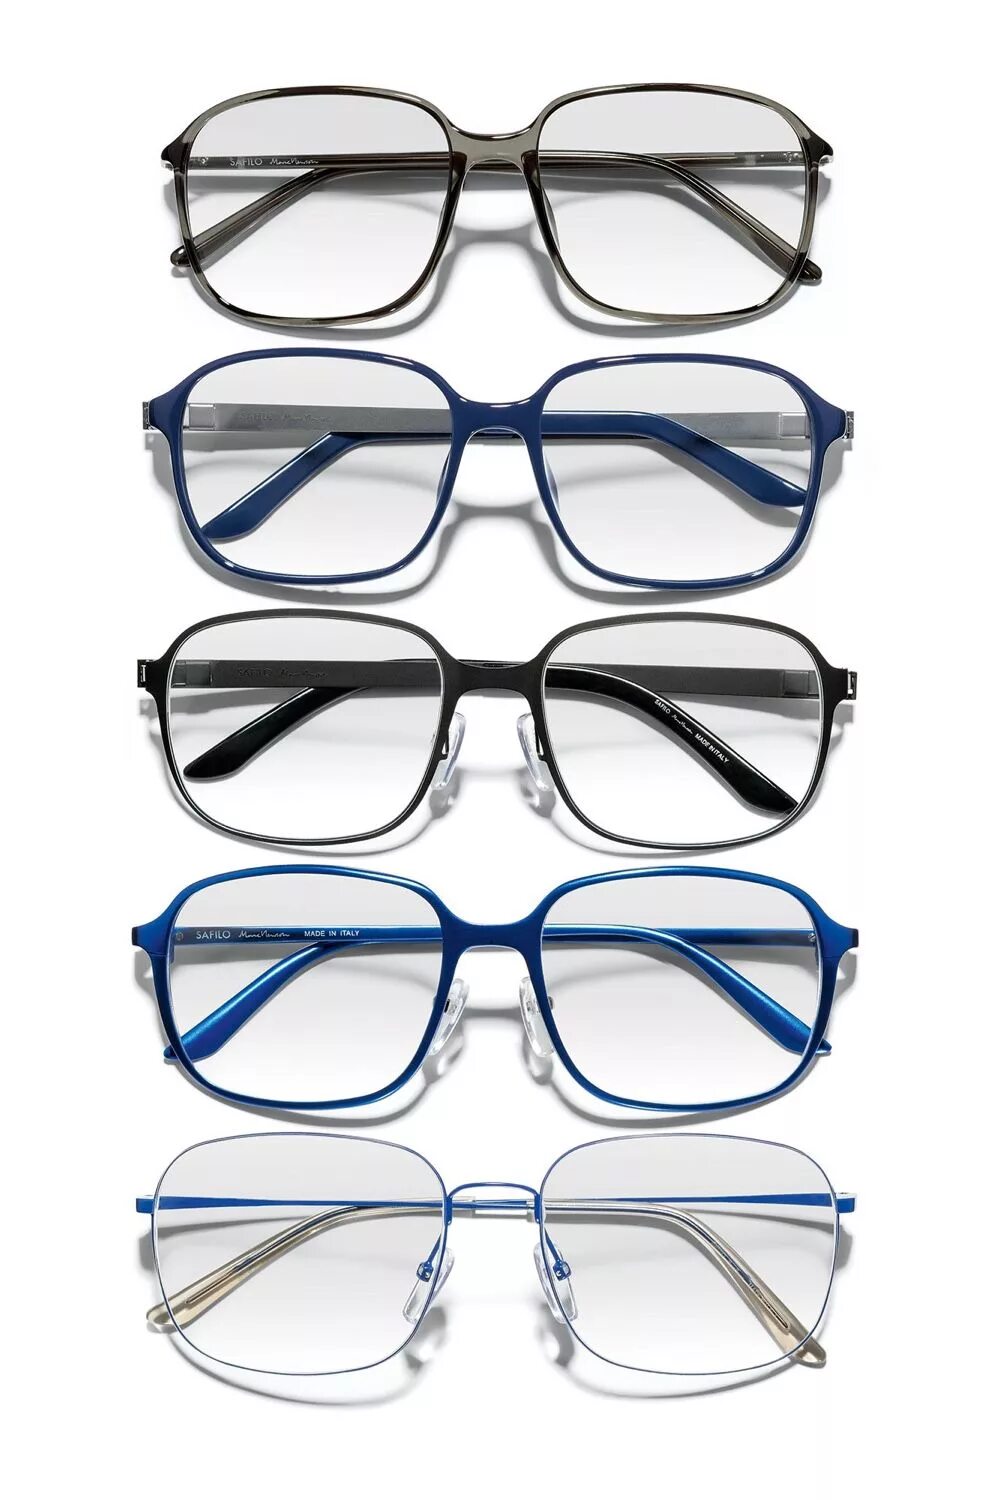 Сафило очки. Солнцезащитные очки Safilo. Safilo Group очки бренды. Tropical bi Safilo мужские очки.